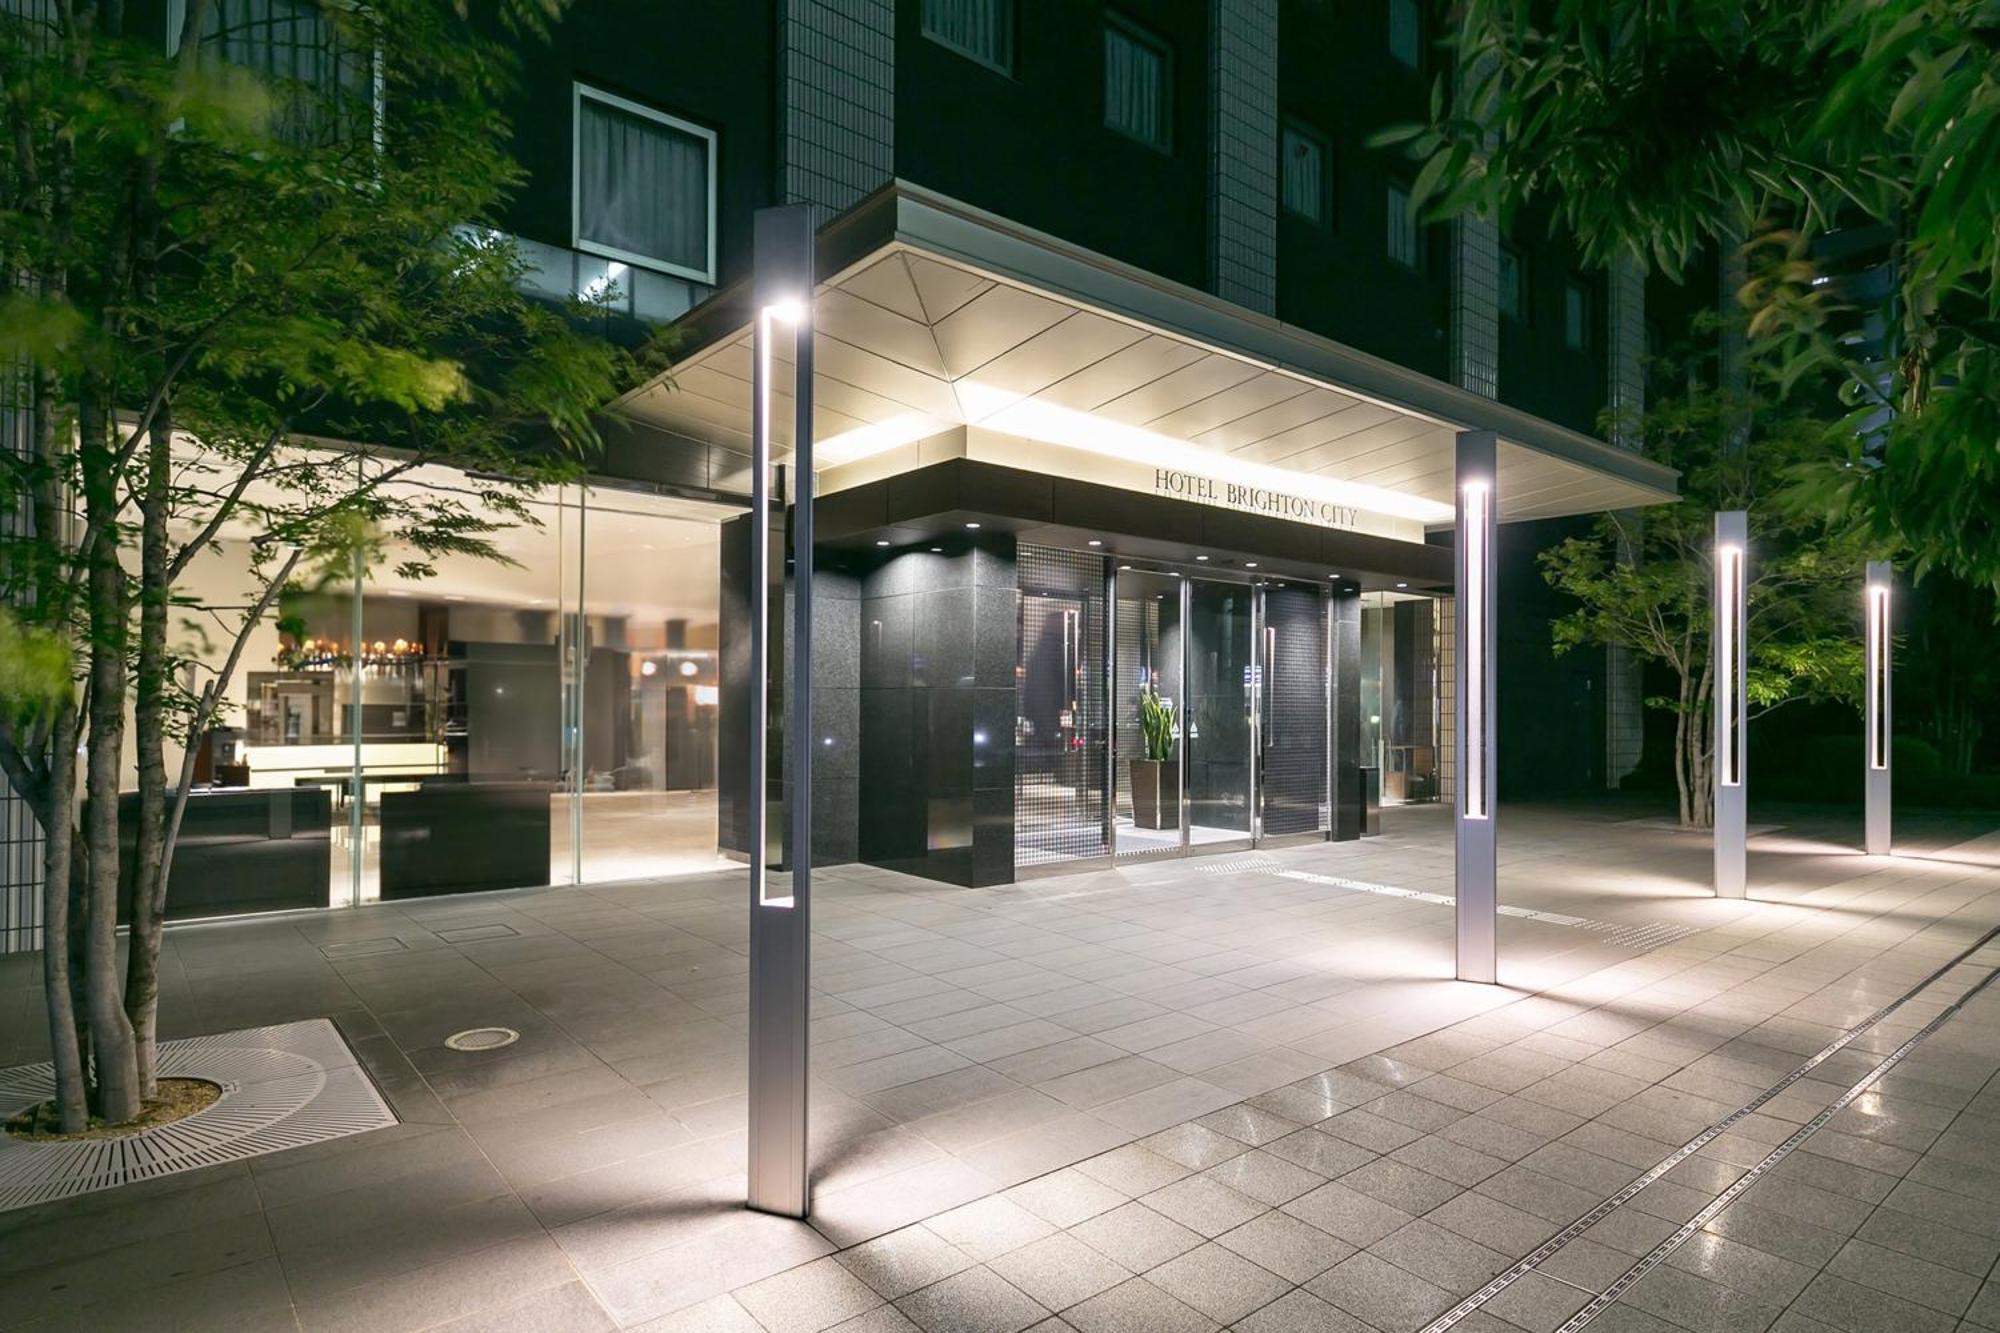 فندق فندق برايتون سيتي أوساكا كيتاهاما المظهر الخارجي الصورة